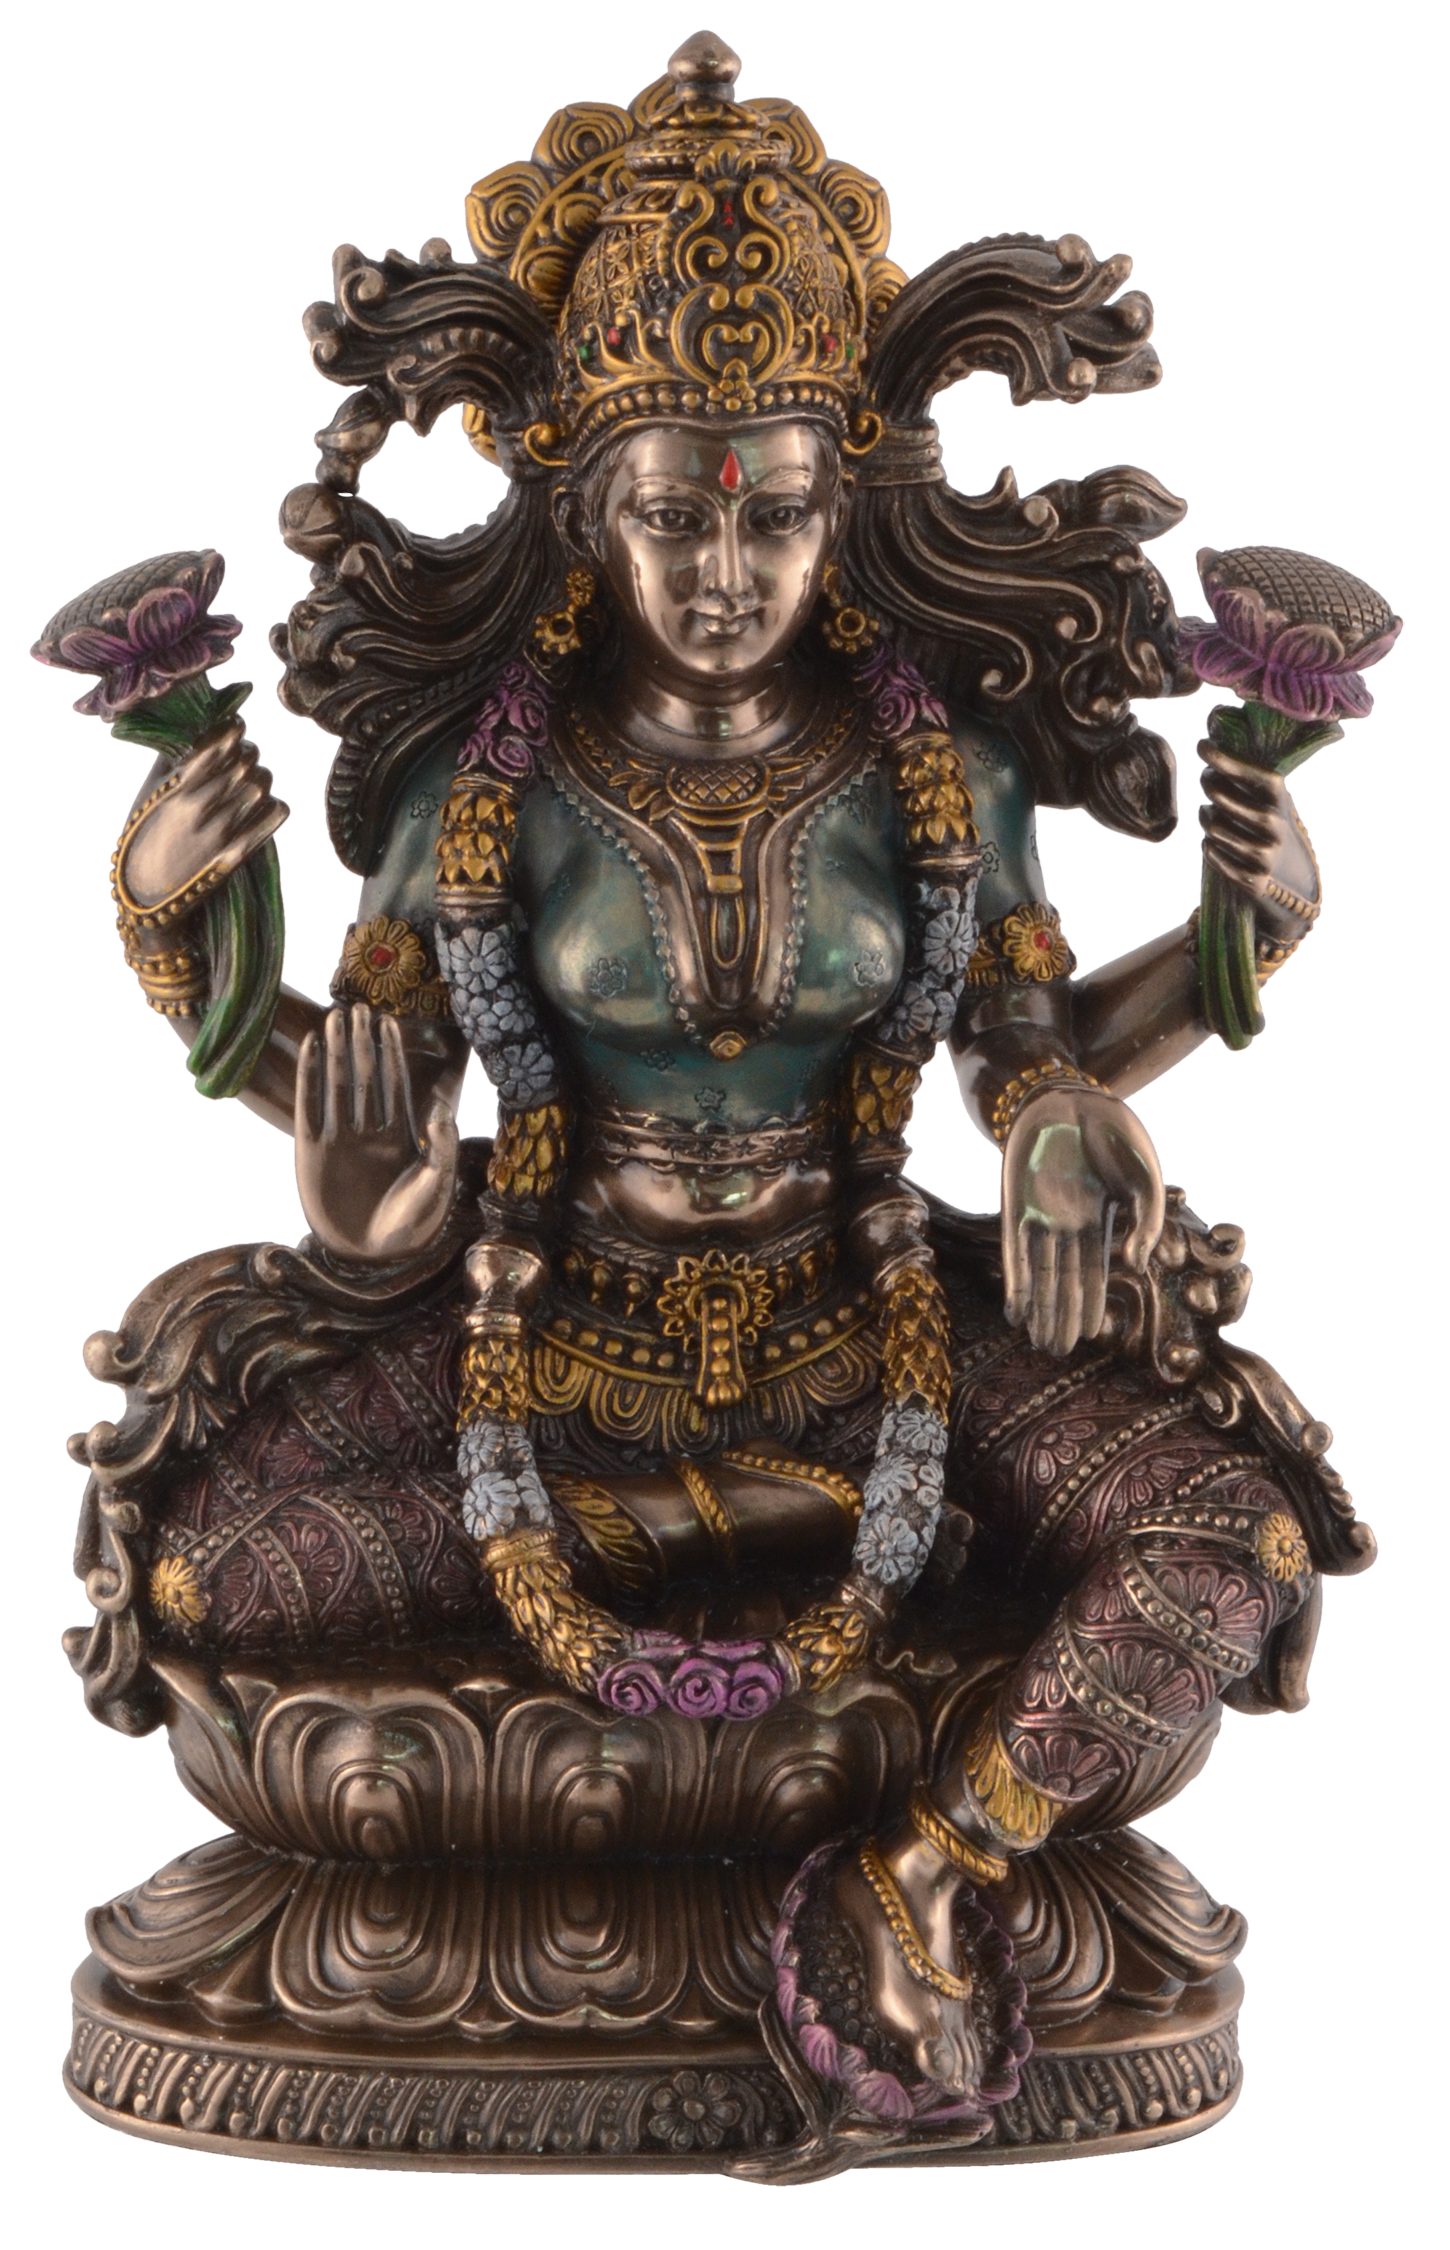 Vogler direct Gmbh Dekofigur Lakshmi ca. des 16x10x24cm Hand Wohlstands LxBxH Göttin bronziert und Lotusthron Indische von auf coloriert, Veronese, by